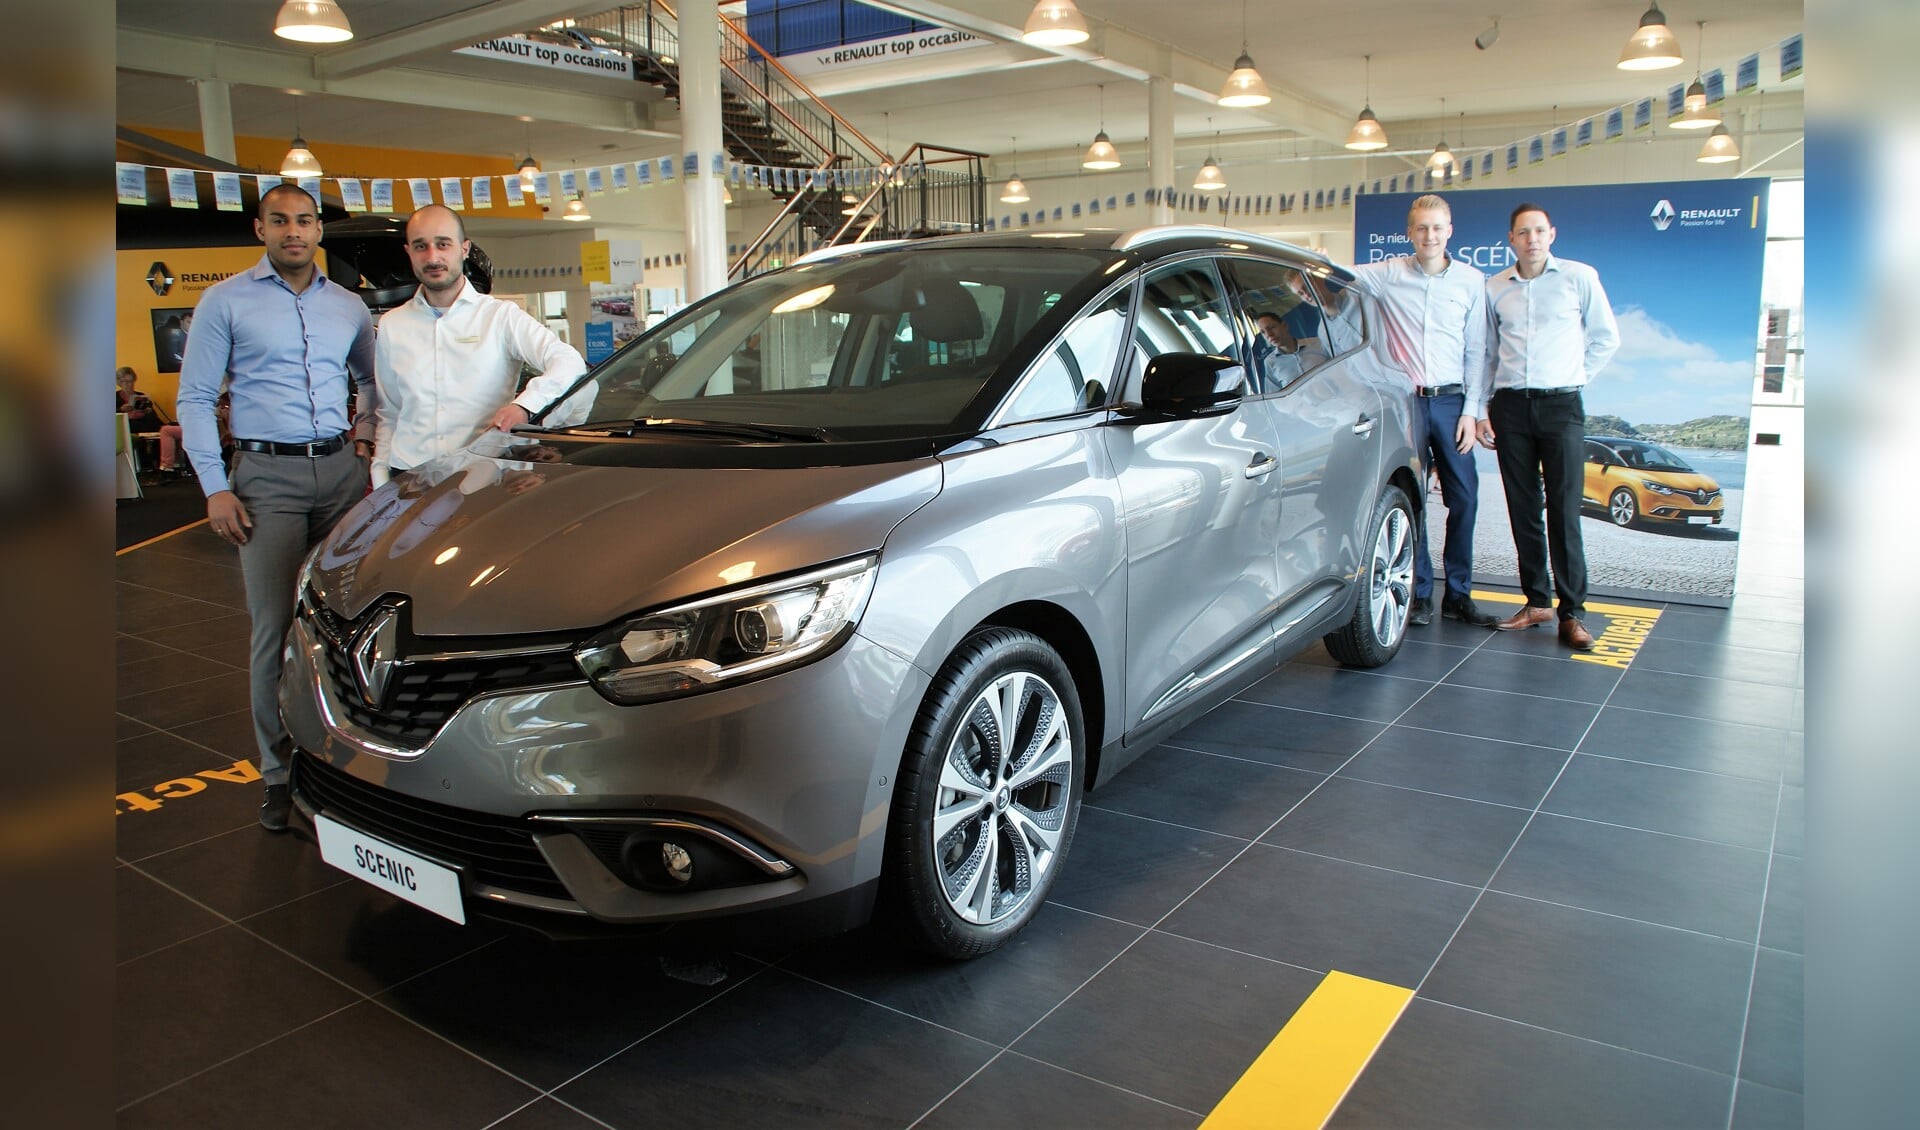 Het verkoopteam maakt u graag enthousiast voor de nieuwe Renault Grand Scenic, met van links naar rechts Ismail Aliradja, Cuneyd Hardalioglu, Lars Dukker en Chris Zoutewelle.